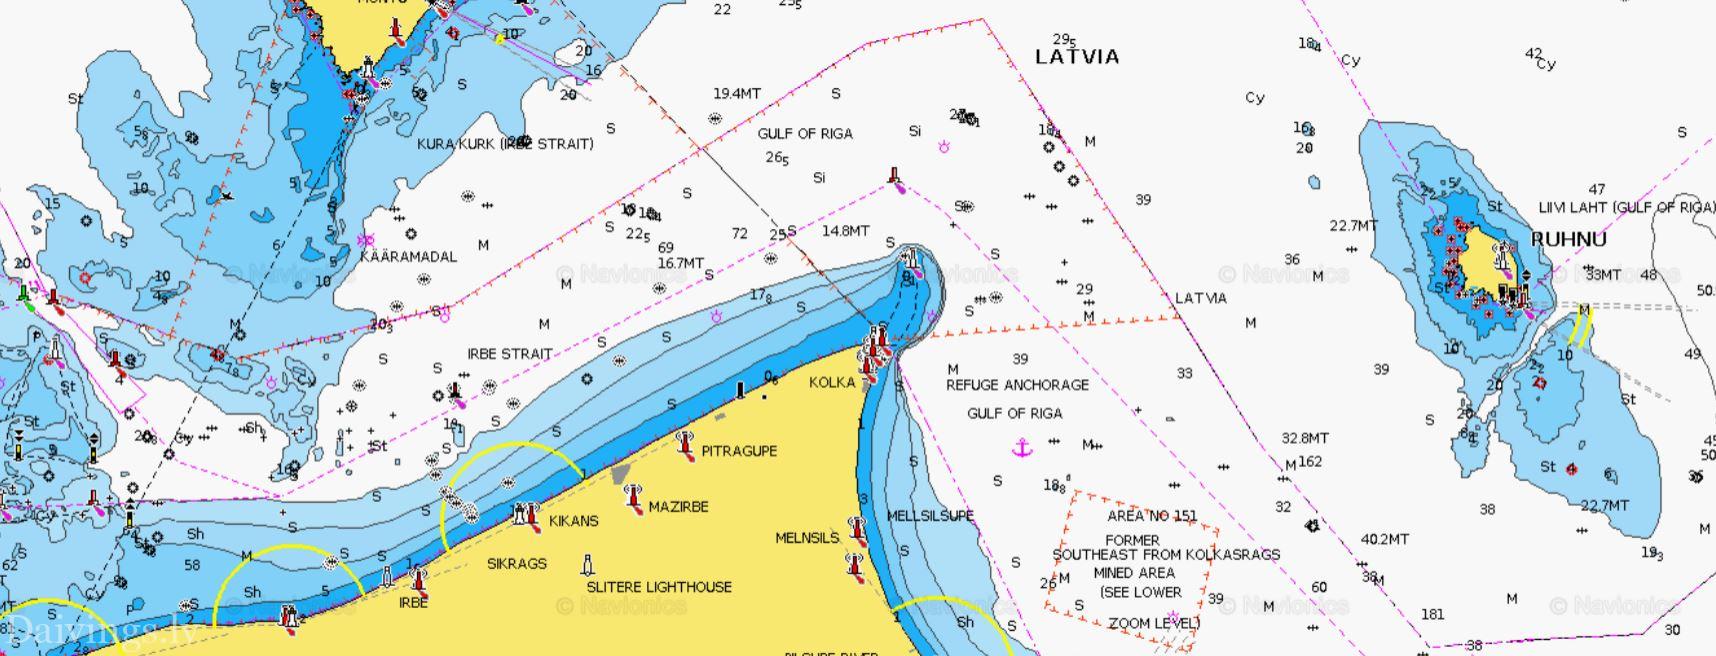 Łotewscy hydrografowie wykonują pomiary głębokości za pomocą łodzi motorowej oraz echosondy bocznej i jednowiązkowej